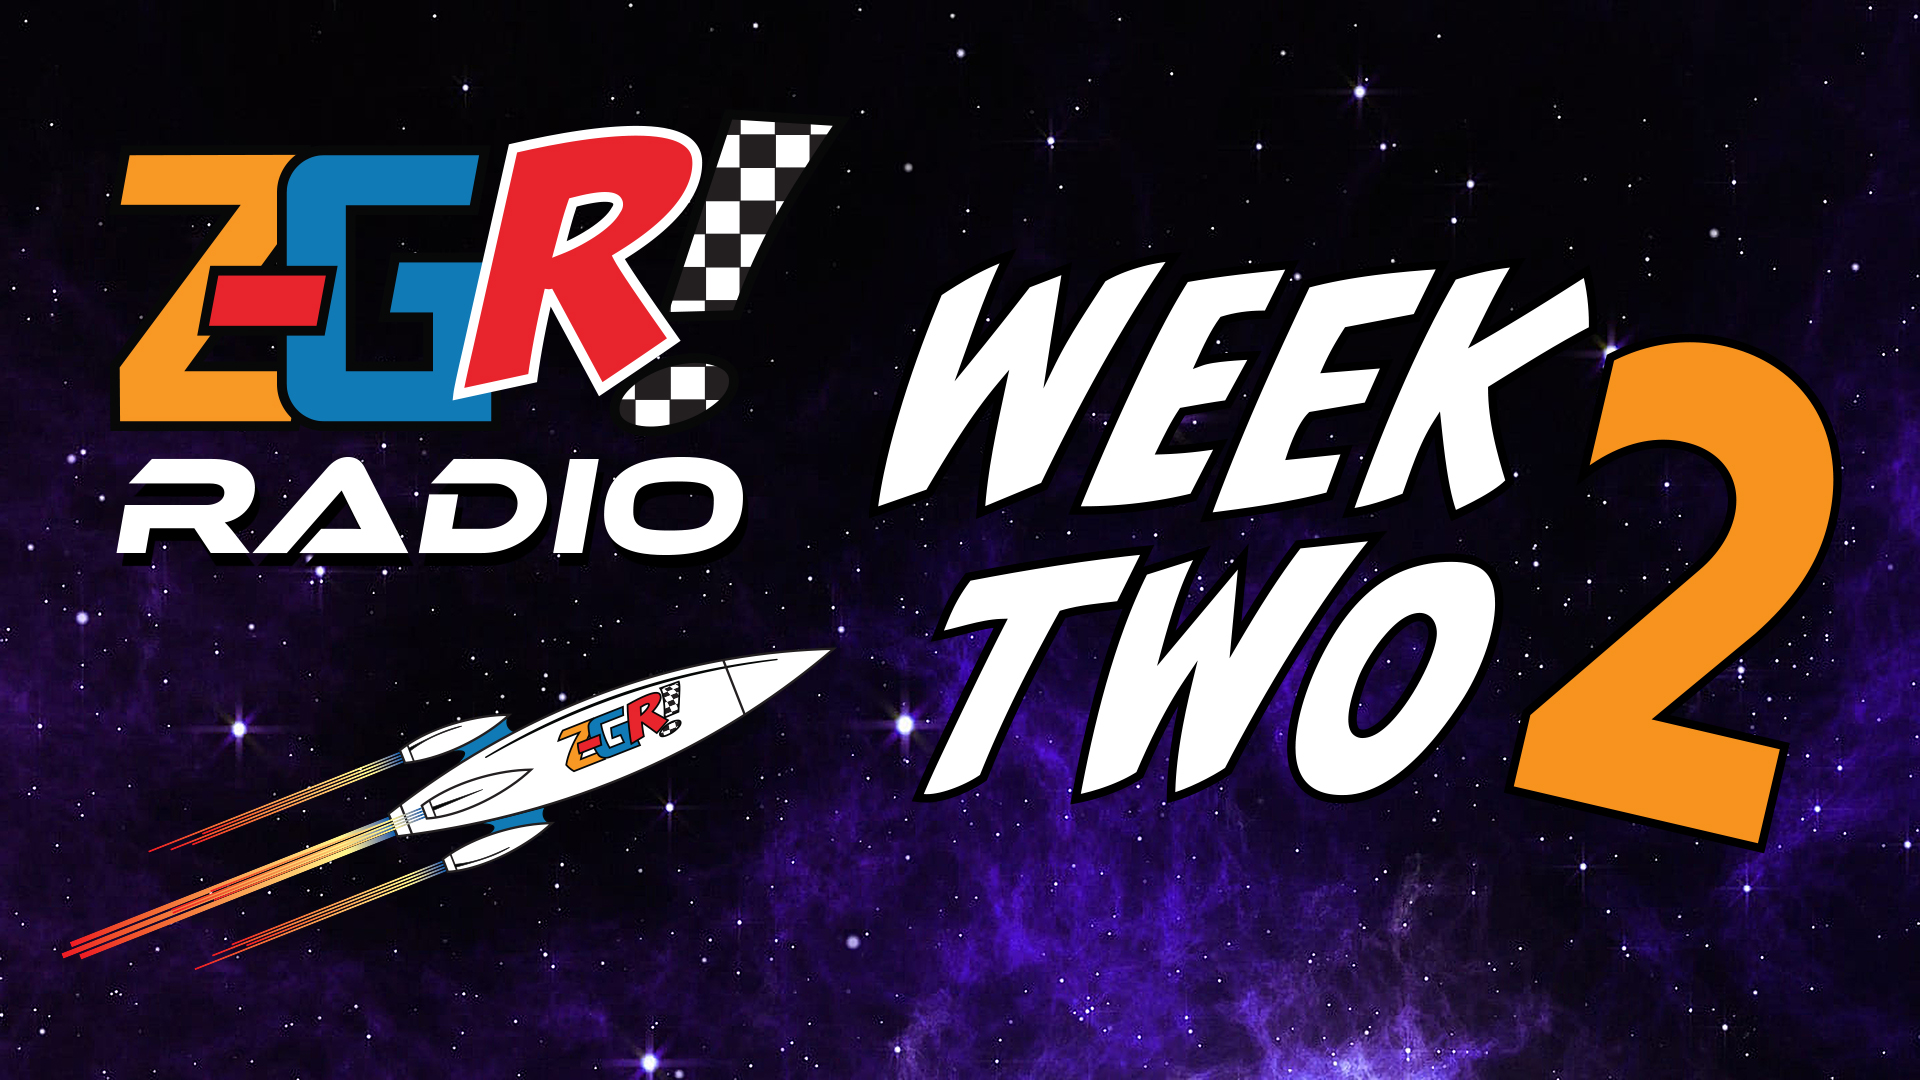 Z-GR! Radio Week 2 Wrap-up